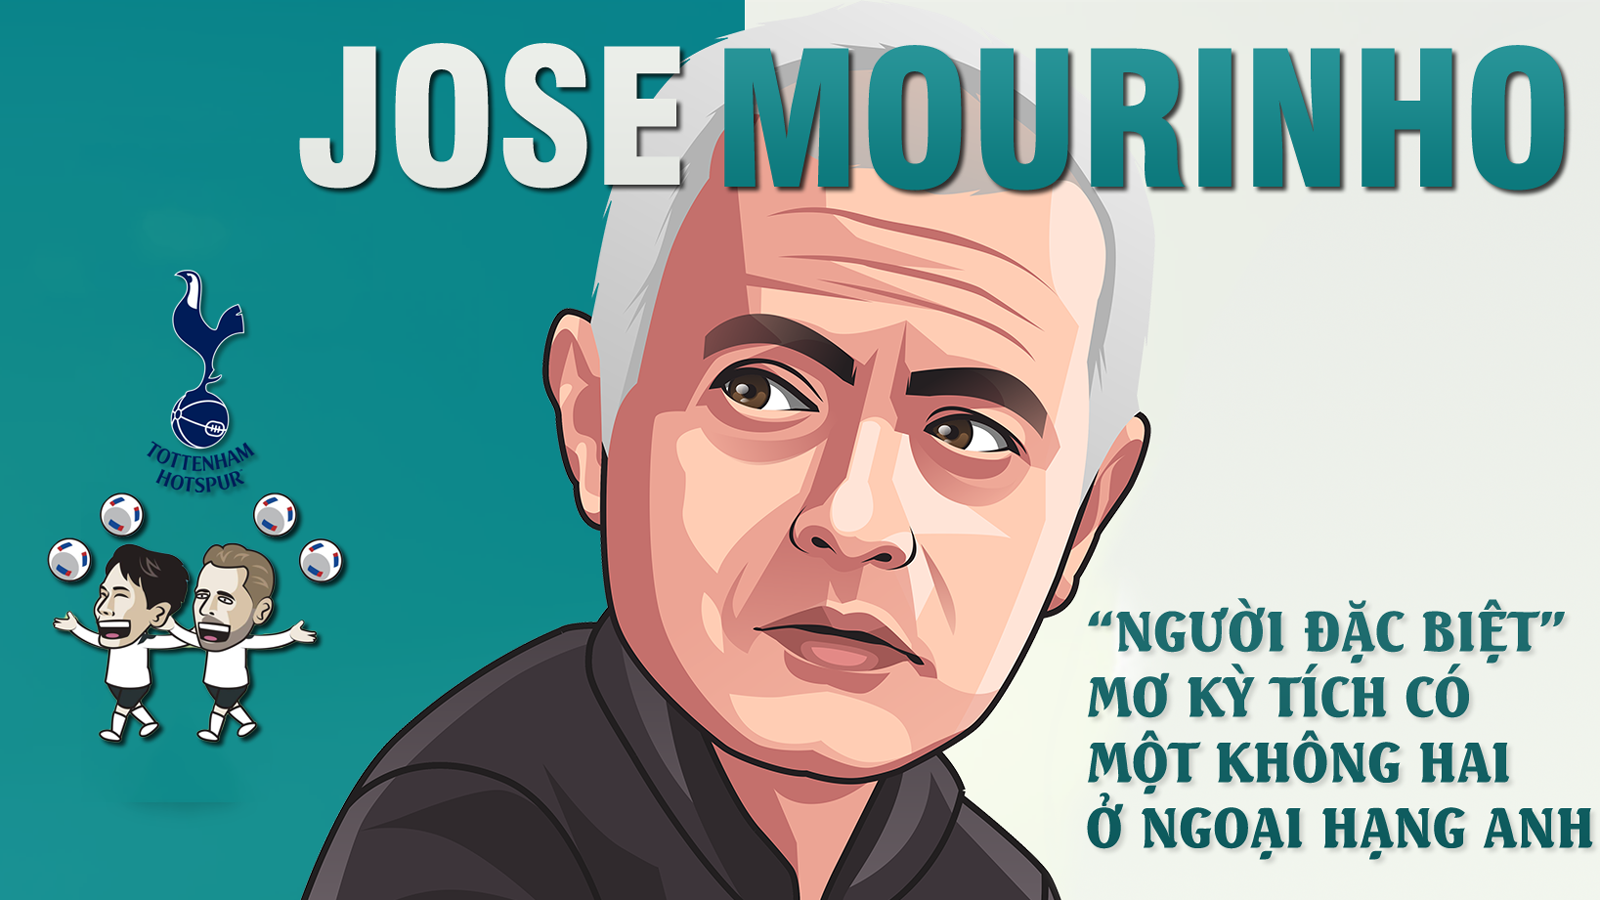 Mourinho: “Người đặc biệt” mơ kỳ tích có một không hai ở Ngoại hạng Anh - 1